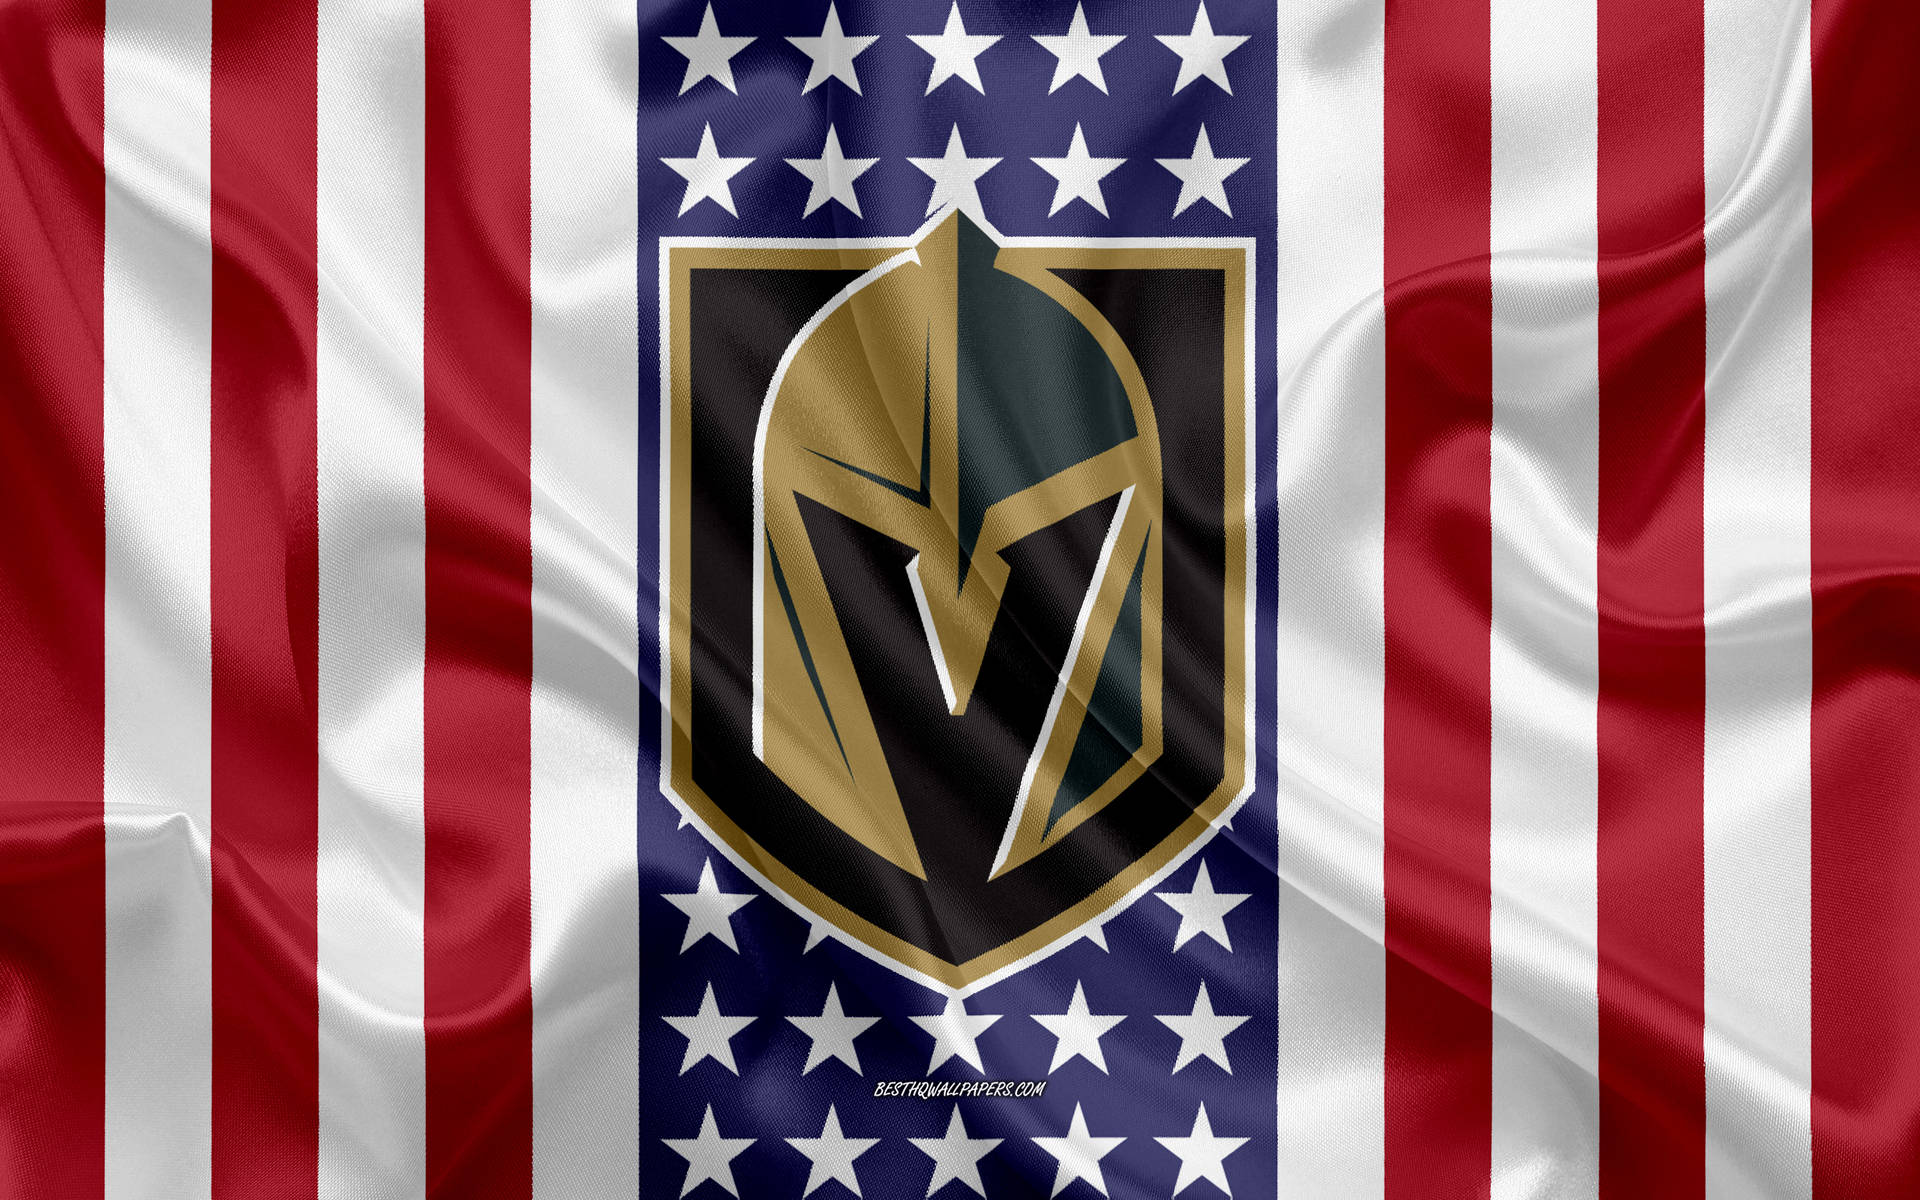 Vegas Golden Knights Emblem On Us Flag Background